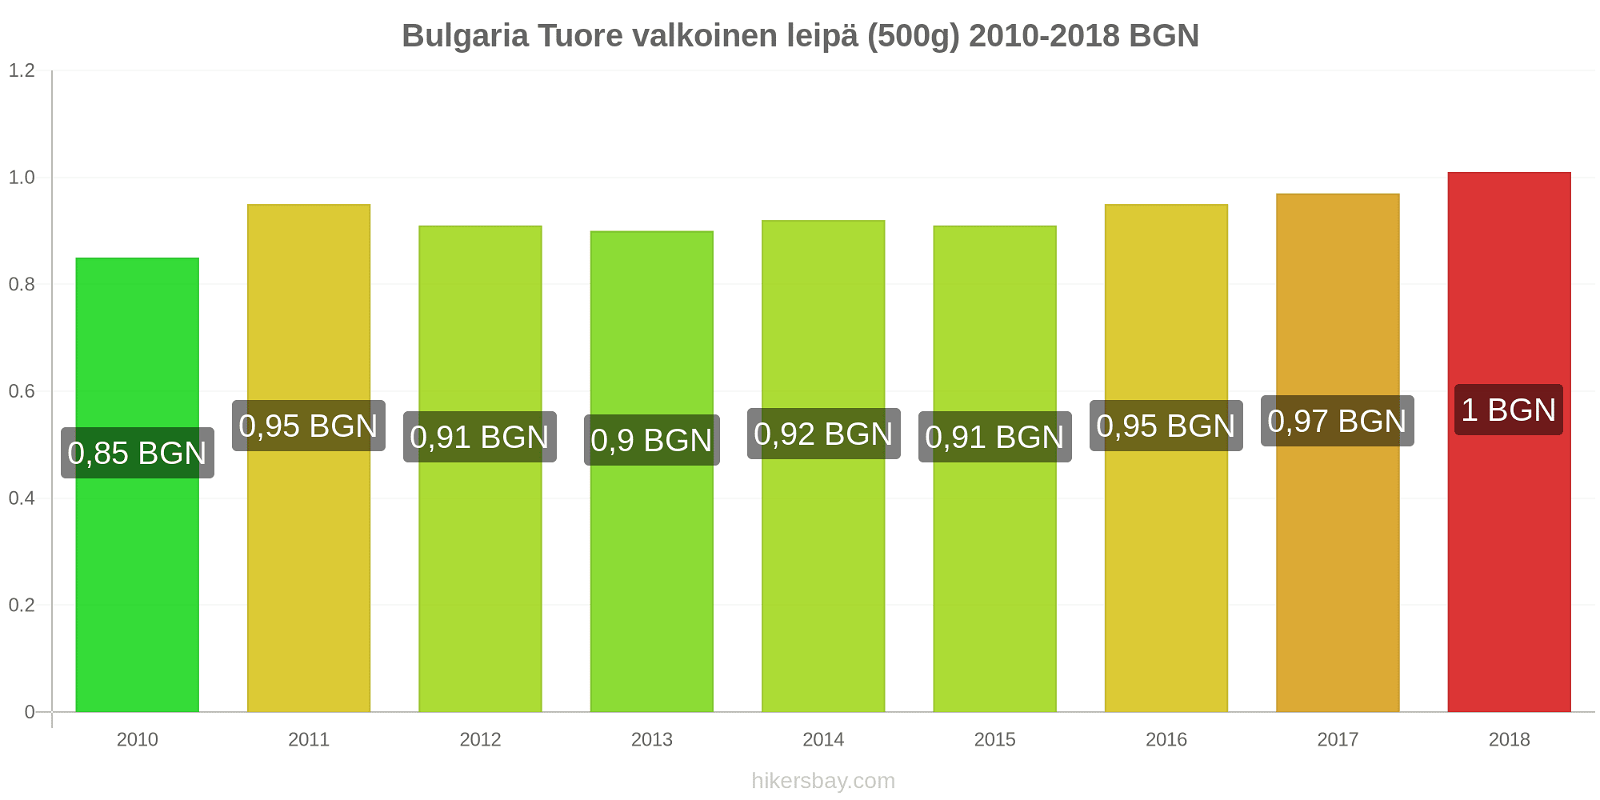 Bulgaria hintojen muutokset Tuore valkoinen leipä (500g) hikersbay.com